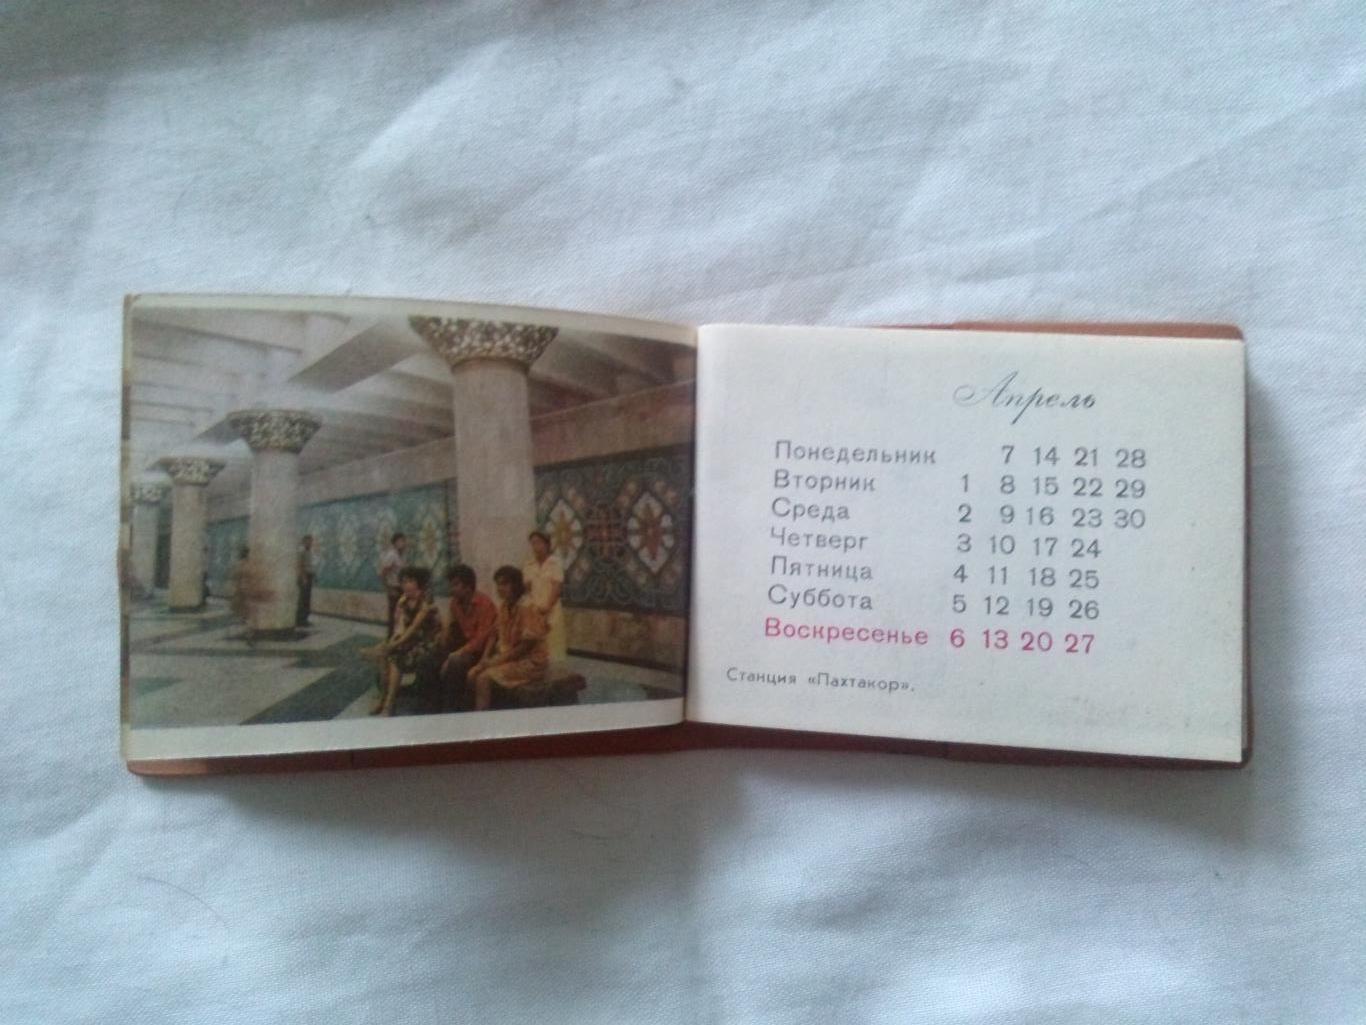 Музей романтики (Музей писателя А. Грина) 1973 г. полный набор - 15 открыток 3